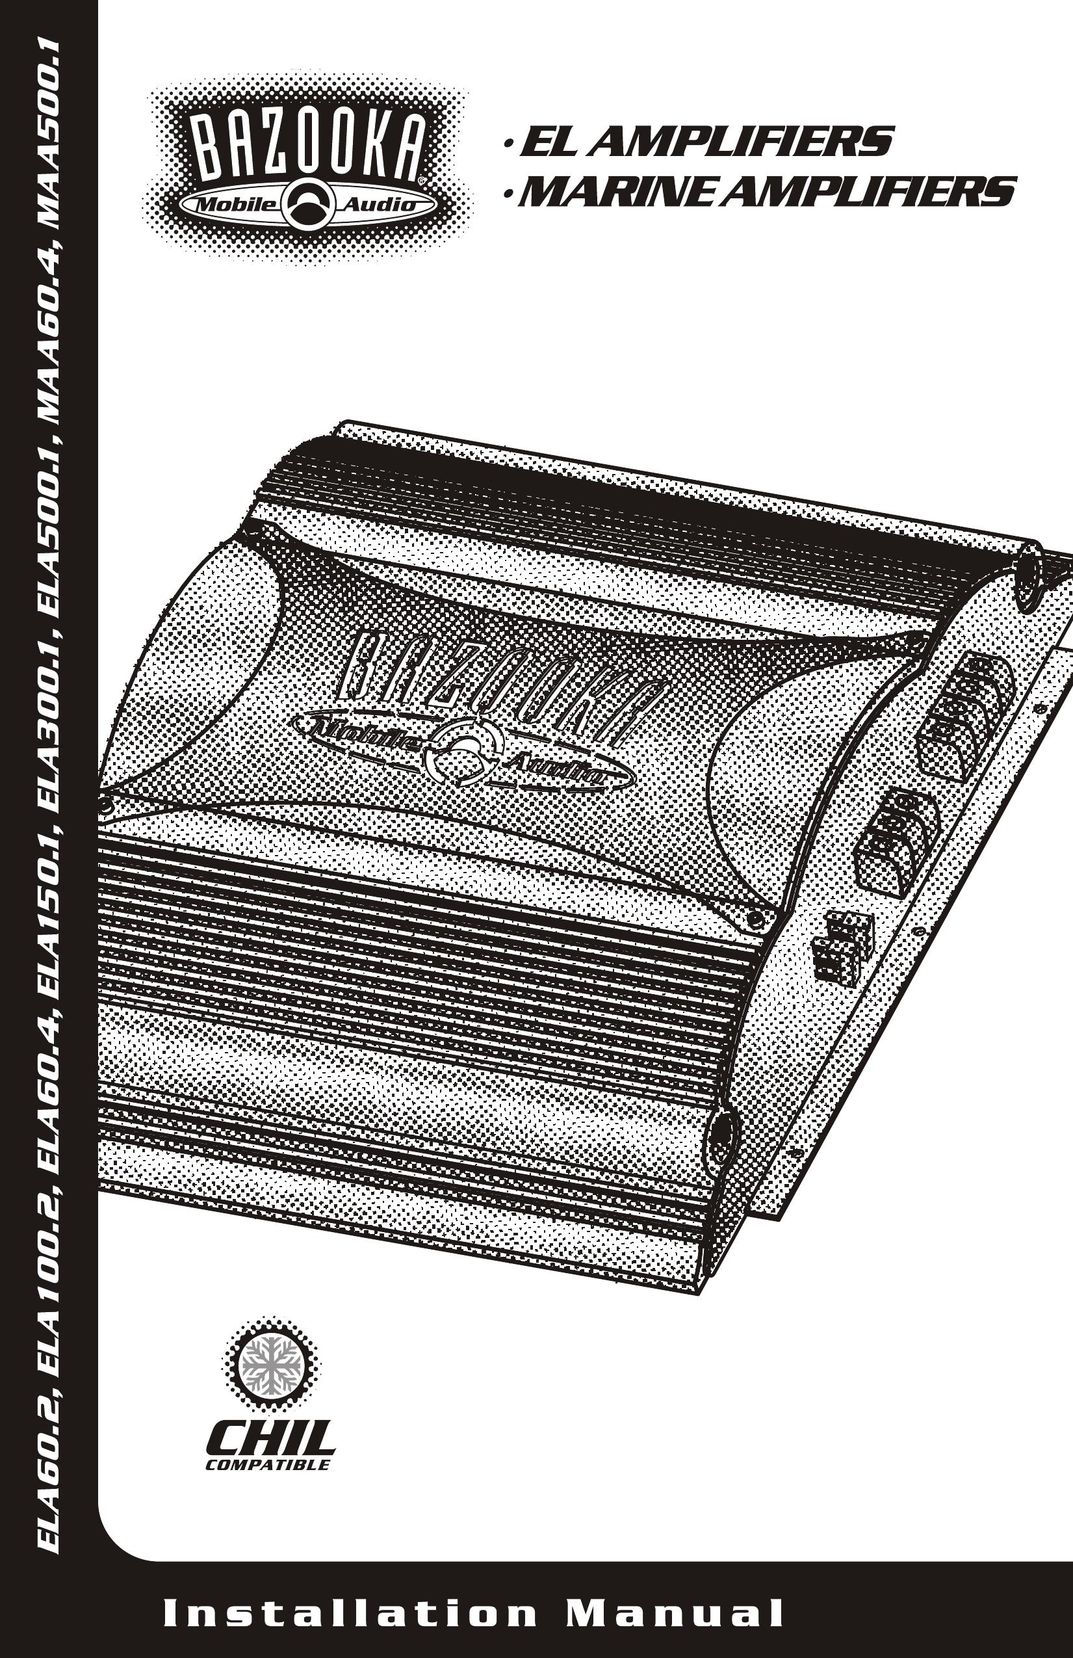 Bazooka MAA500.1 Car Amplifier User Manual